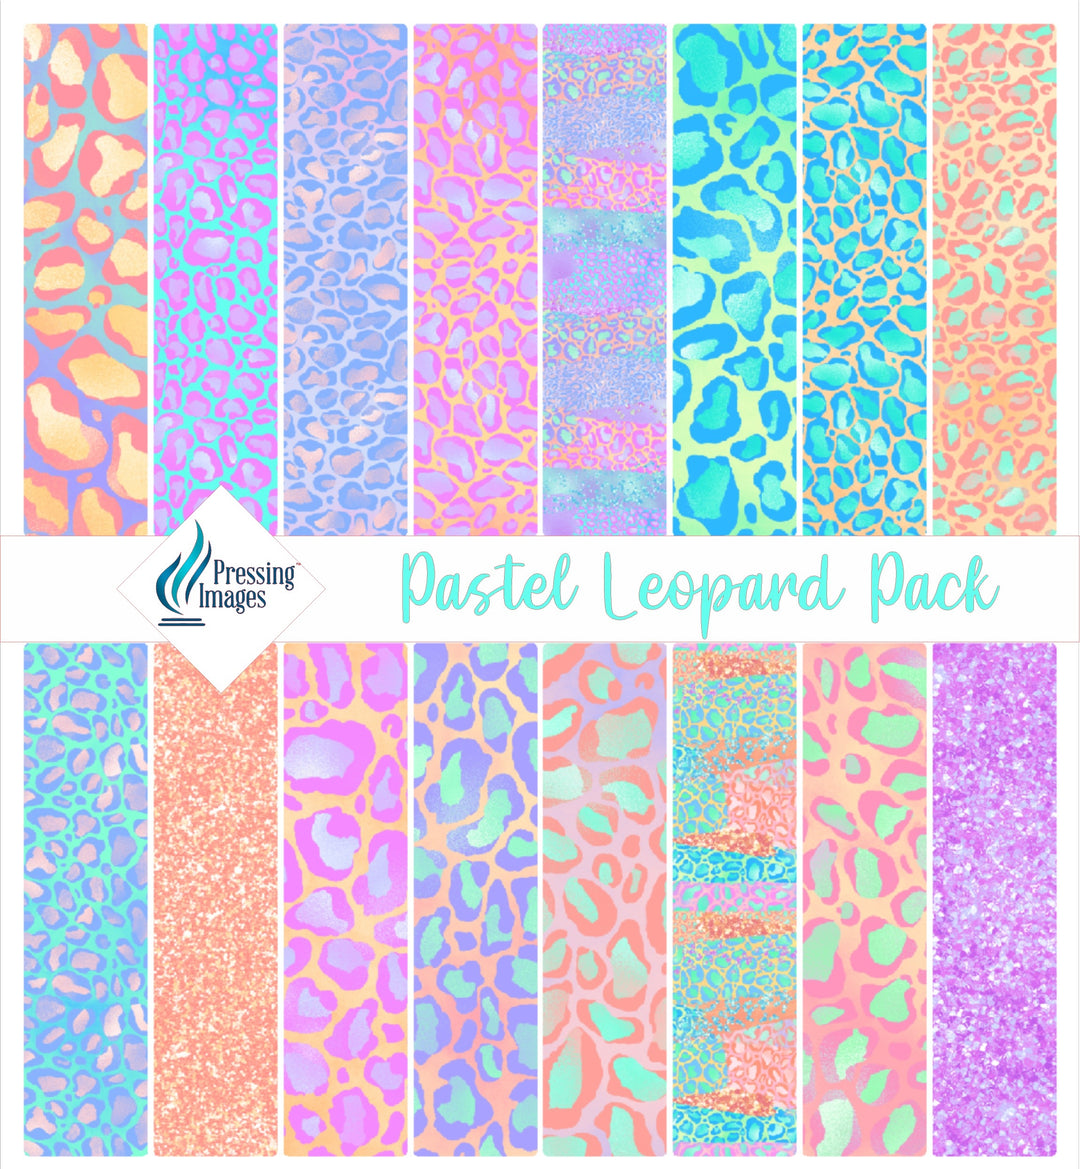 Pastel Leopard Wrap Pack